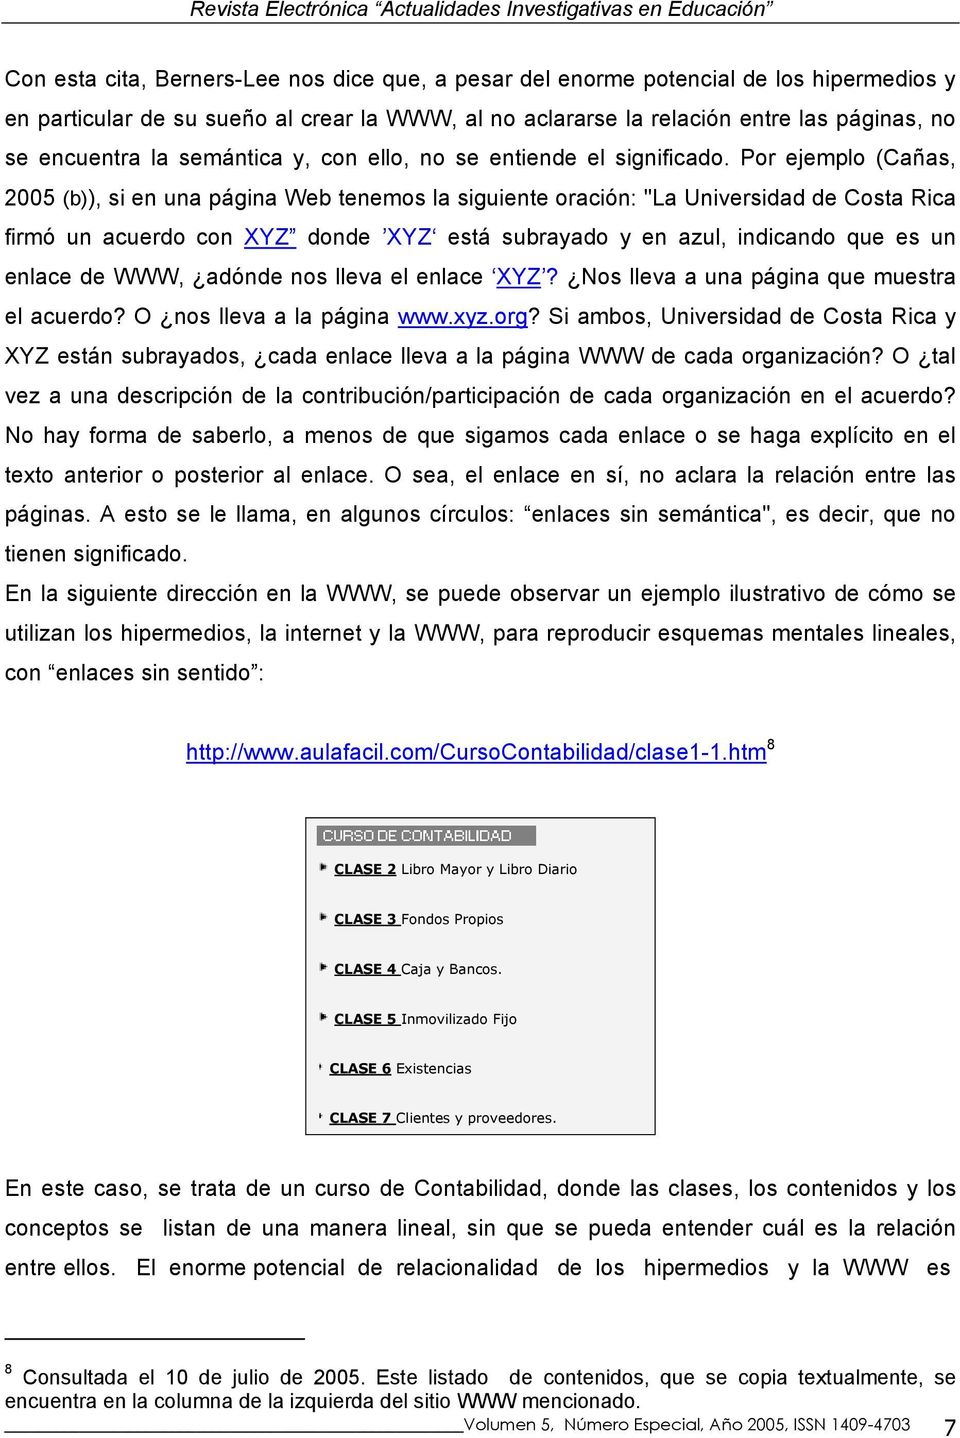 Por ejemplo (Cañas, 2005 (b)), si en una página Web tenemos la siguiente oración: "La Universidad de Costa Rica firmó un acuerdo con XYZ donde XYZ está subrayado y en azul, indicando que es un enlace